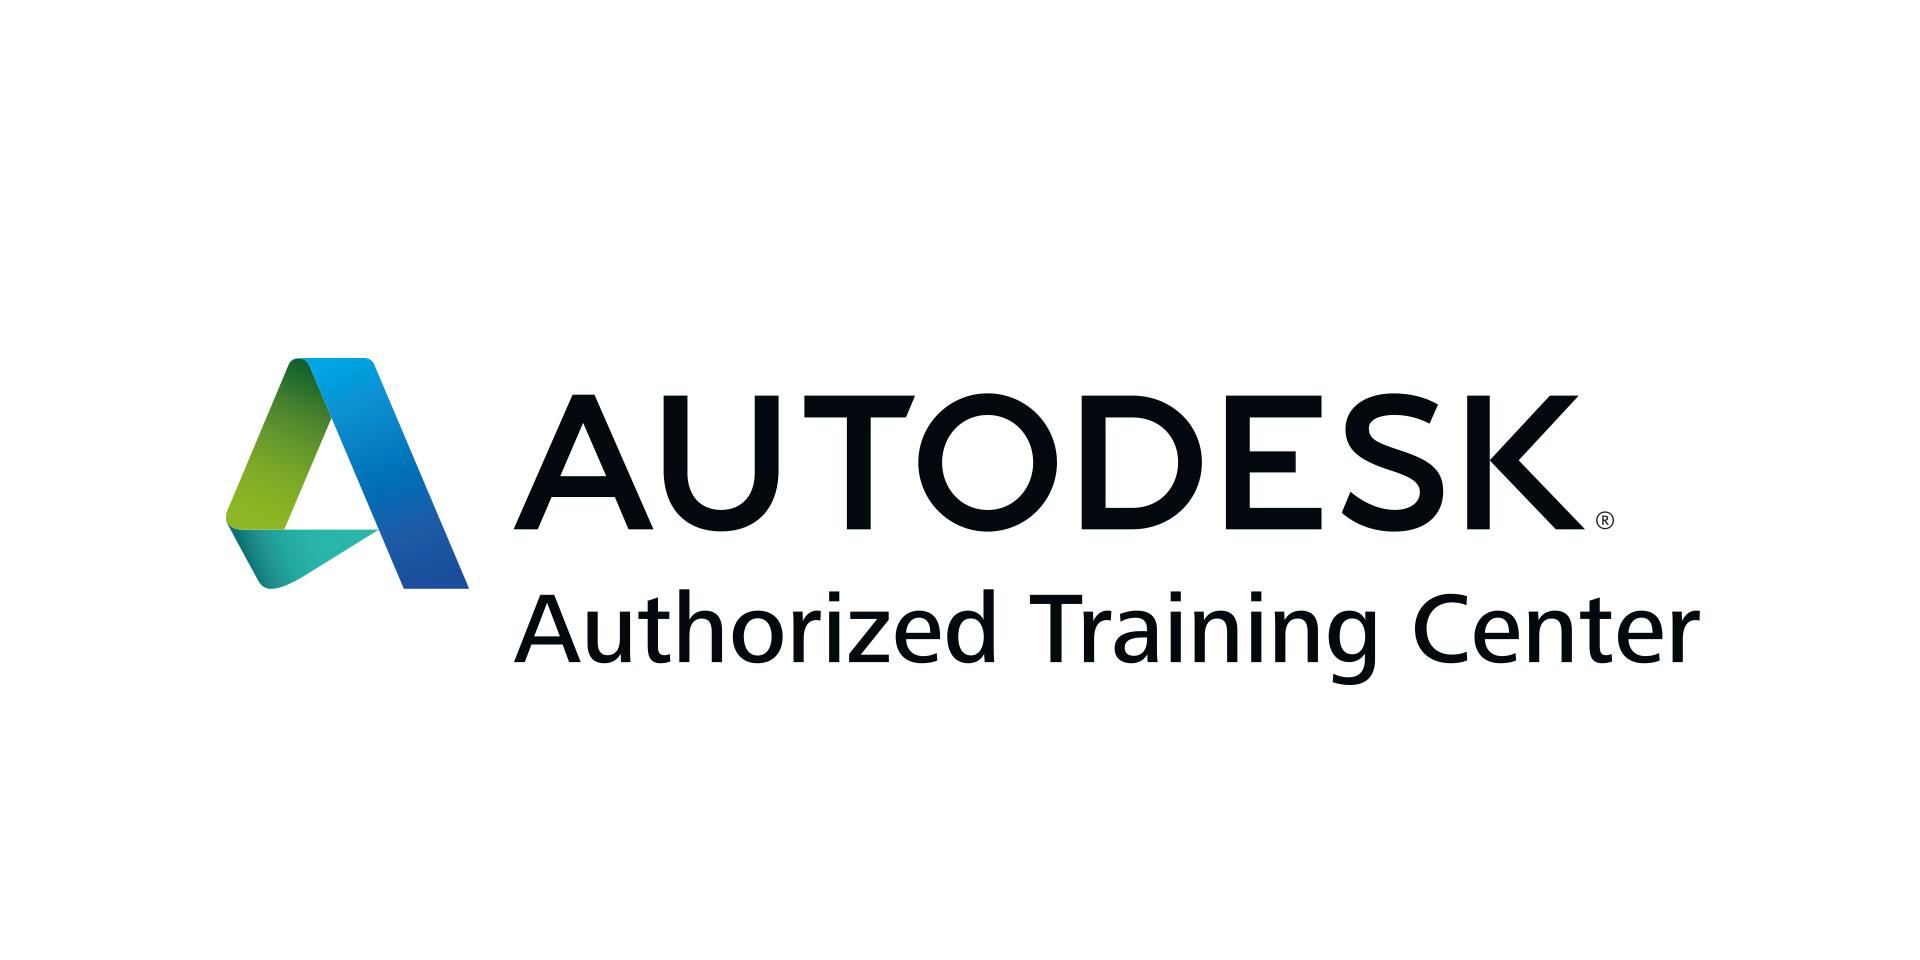 Autodesk Logo - Autodesk. $ADSK Stock. Shares Rocket Higher On Earnings Beat